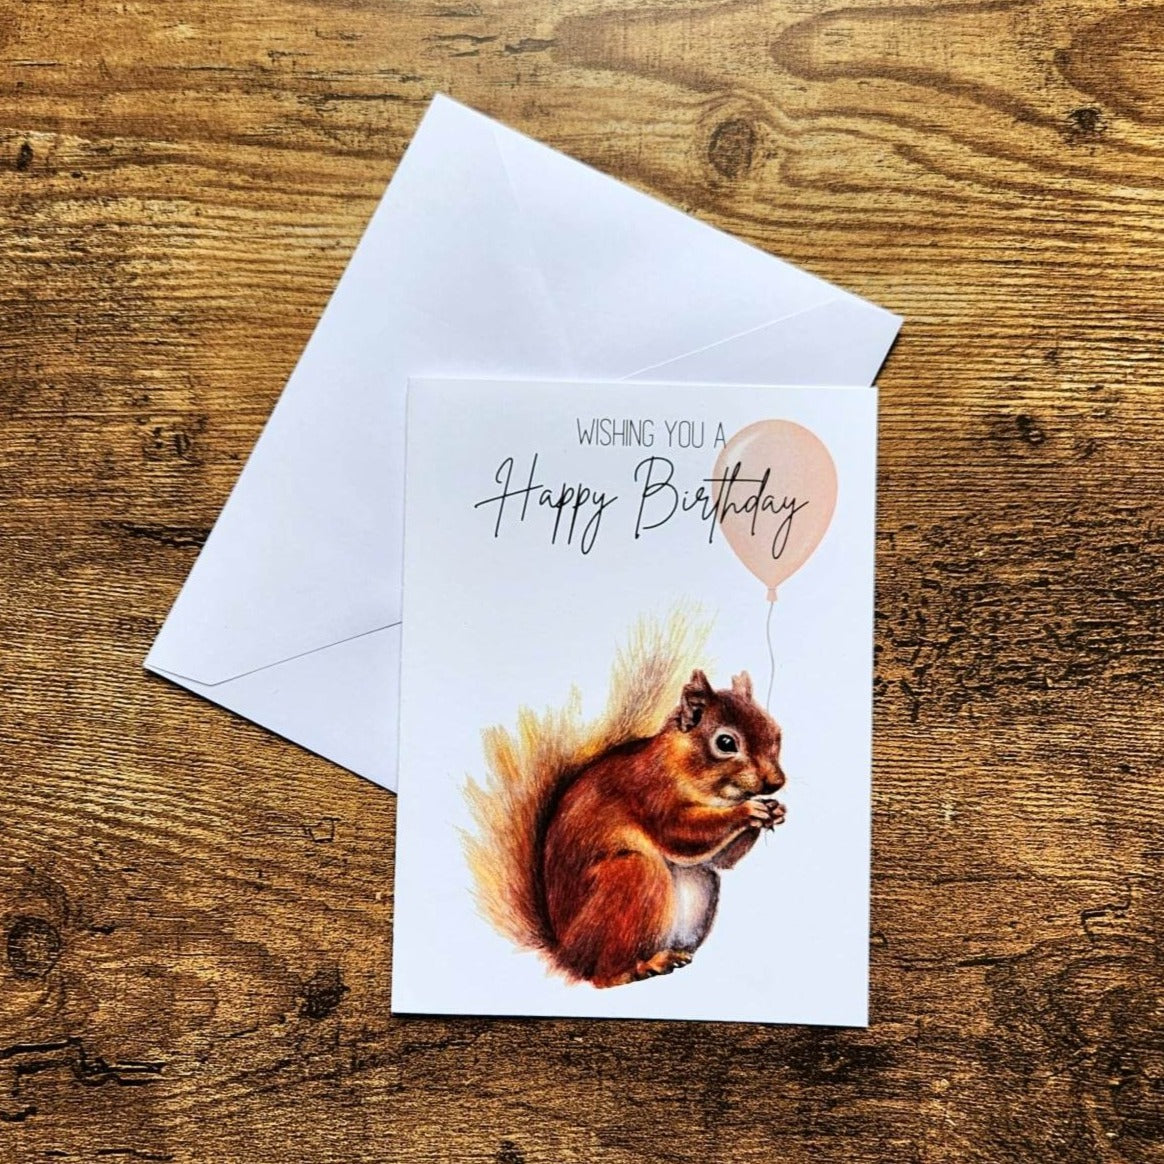 Cute squirrel birthday card, woodland birthday card for kids, Animal card for child, Squirrel birthday greeting, Card for girlfriend, Wife